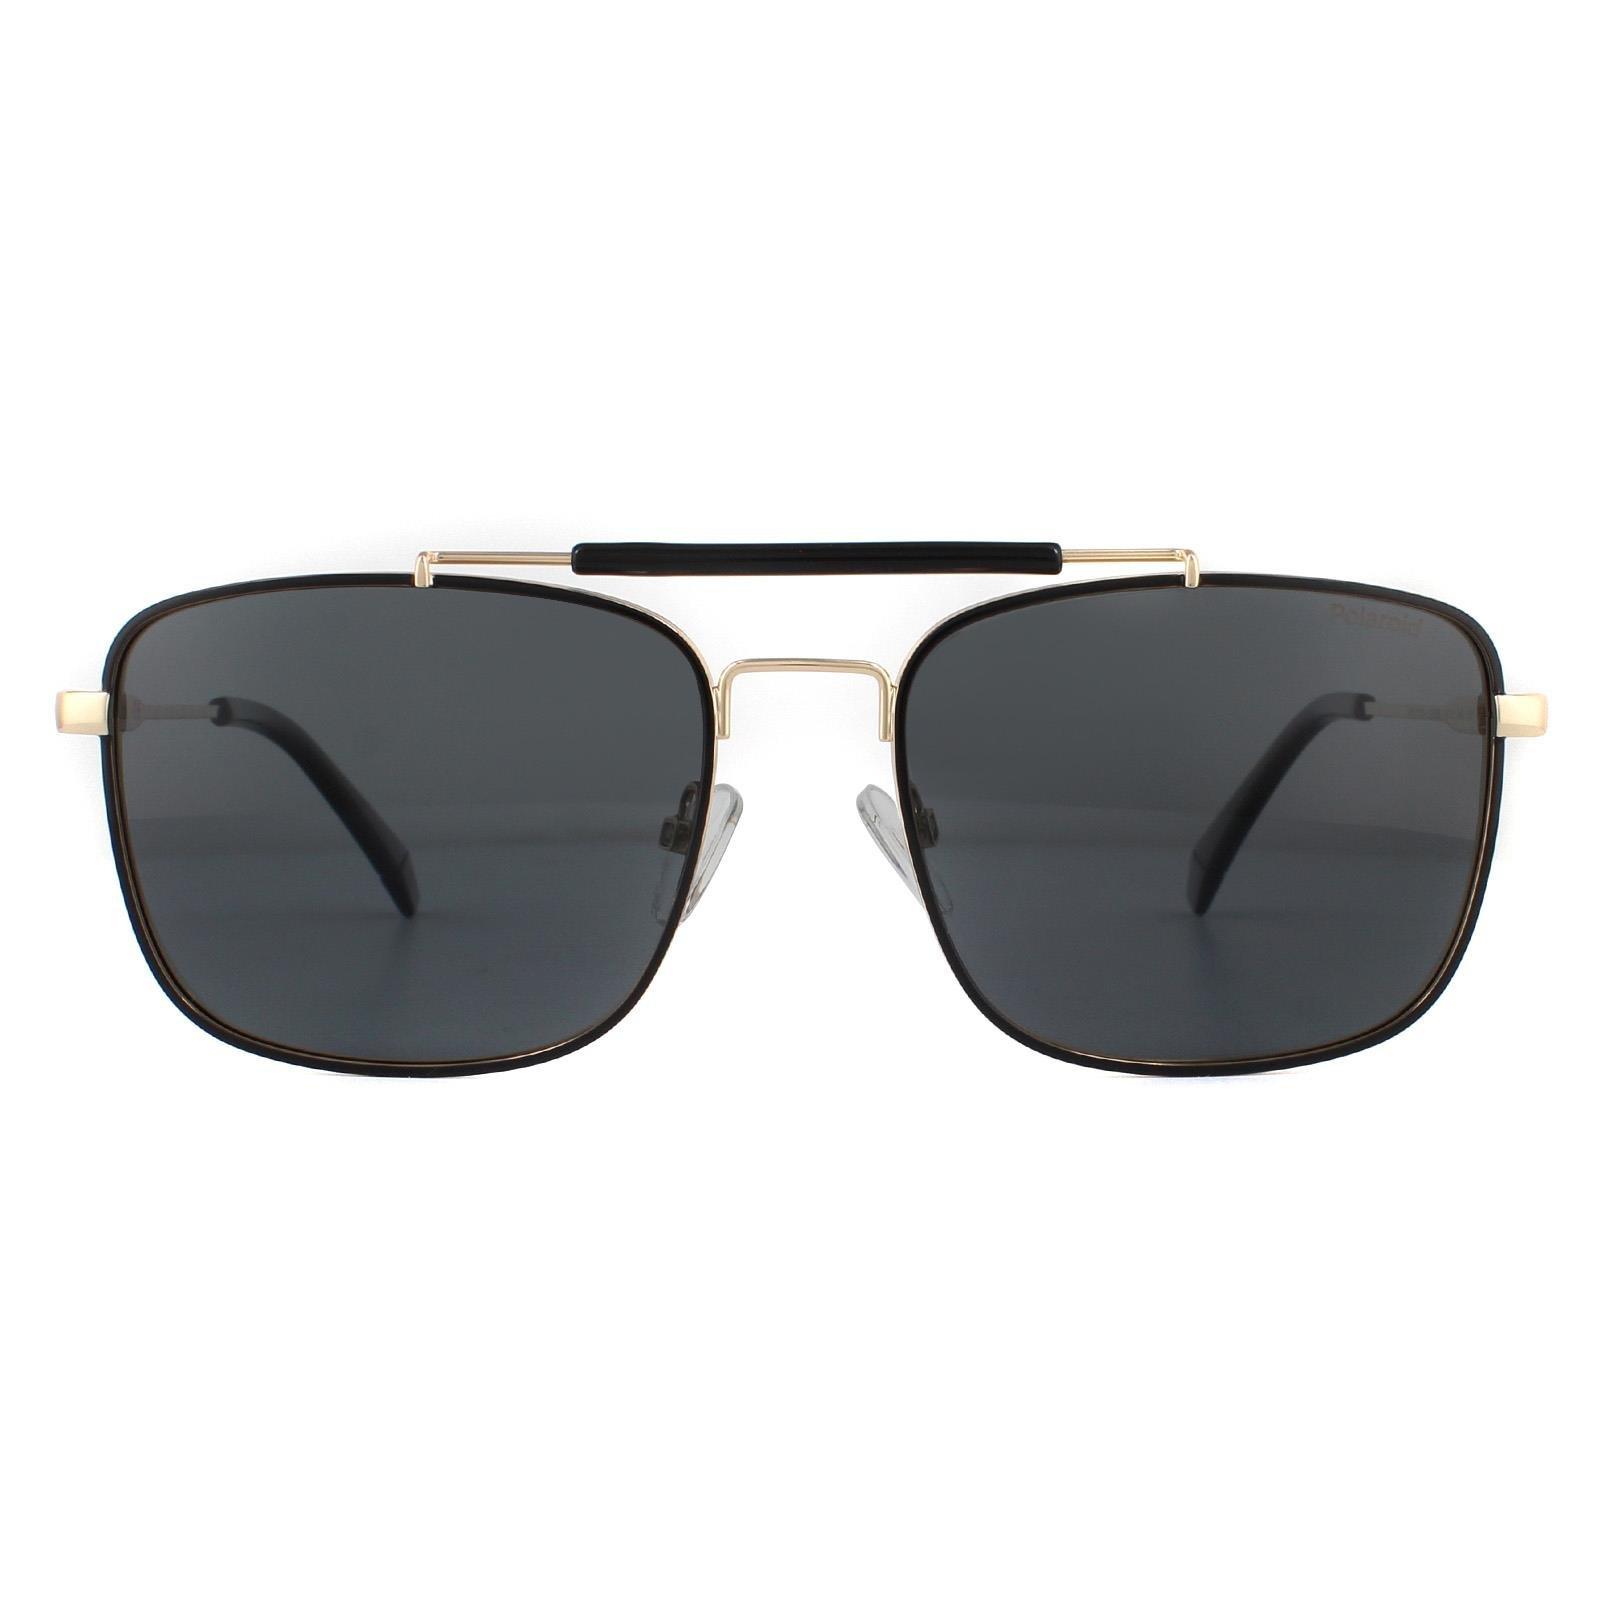 Поляризованные солнцезащитные очки Aviator Black Gold Grey Polaroid, золото polaroid pld 8038 s b3v m9